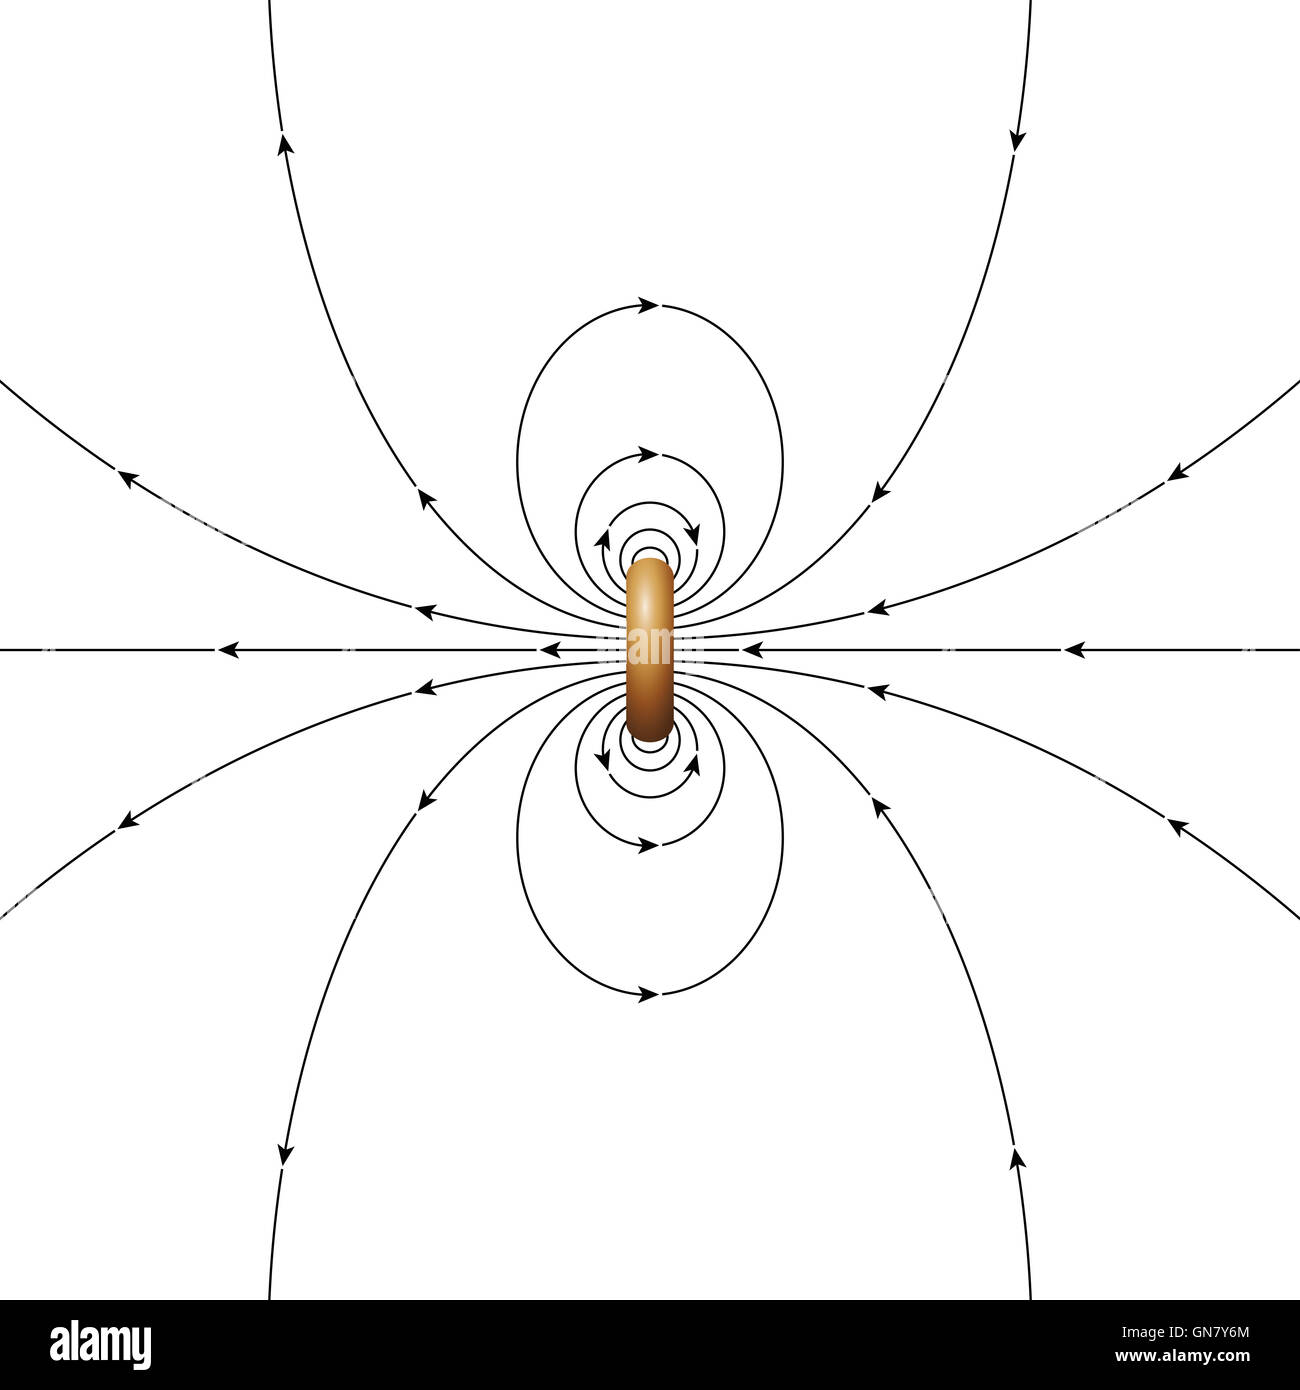 Les lignes de champ magnétique d'un courant de cycle de diamètre fini. Les flèches indiquant la direction du champ magnétique. Illustration Banque D'Images